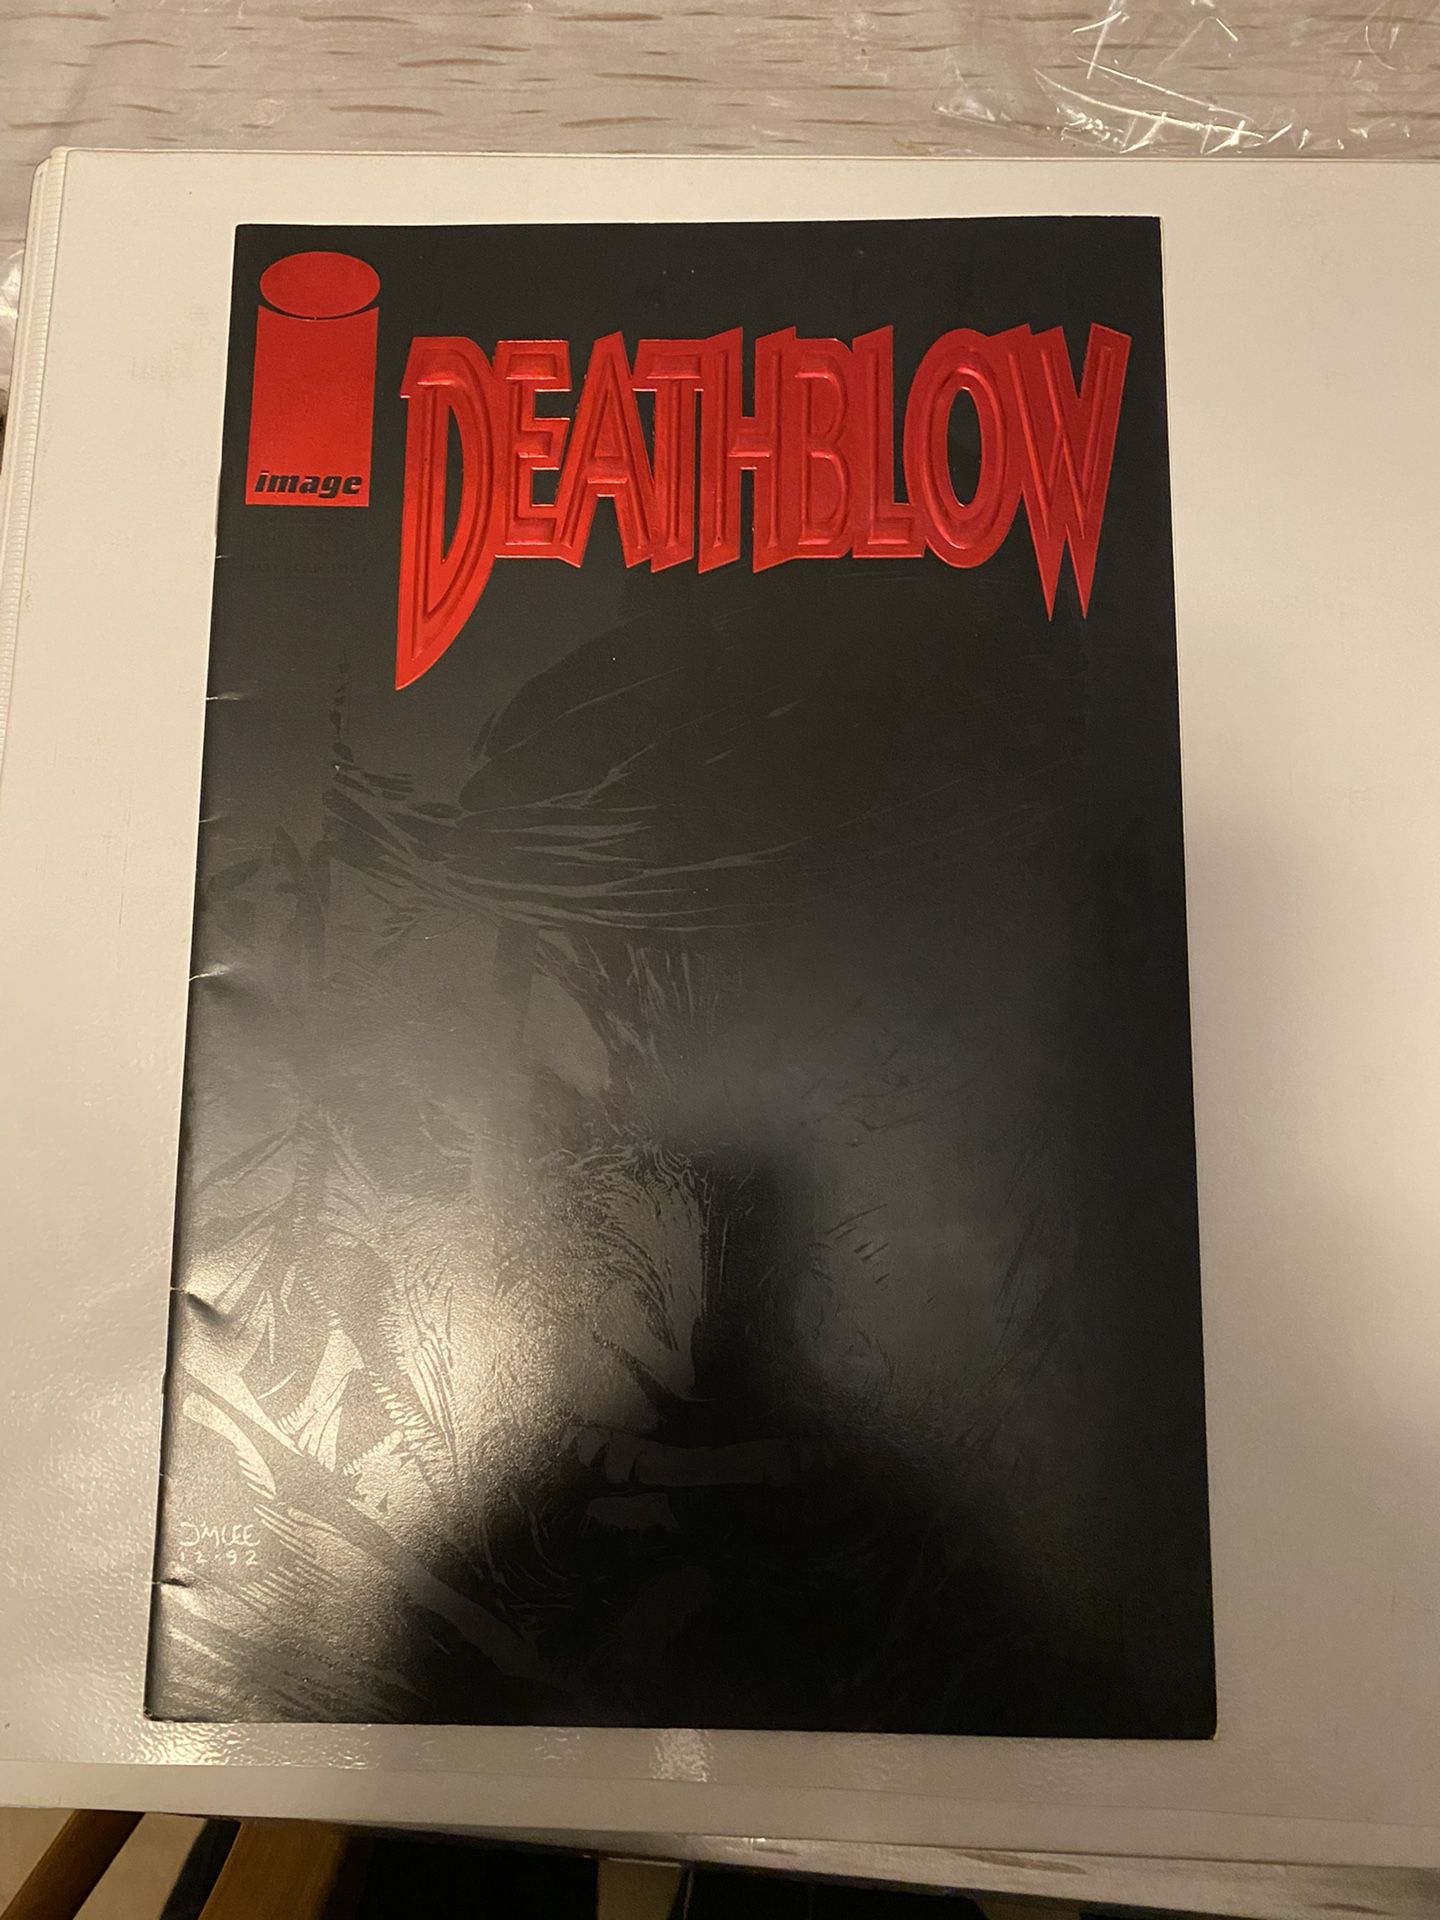 Deathblow #1 (Apr 1993, Image).